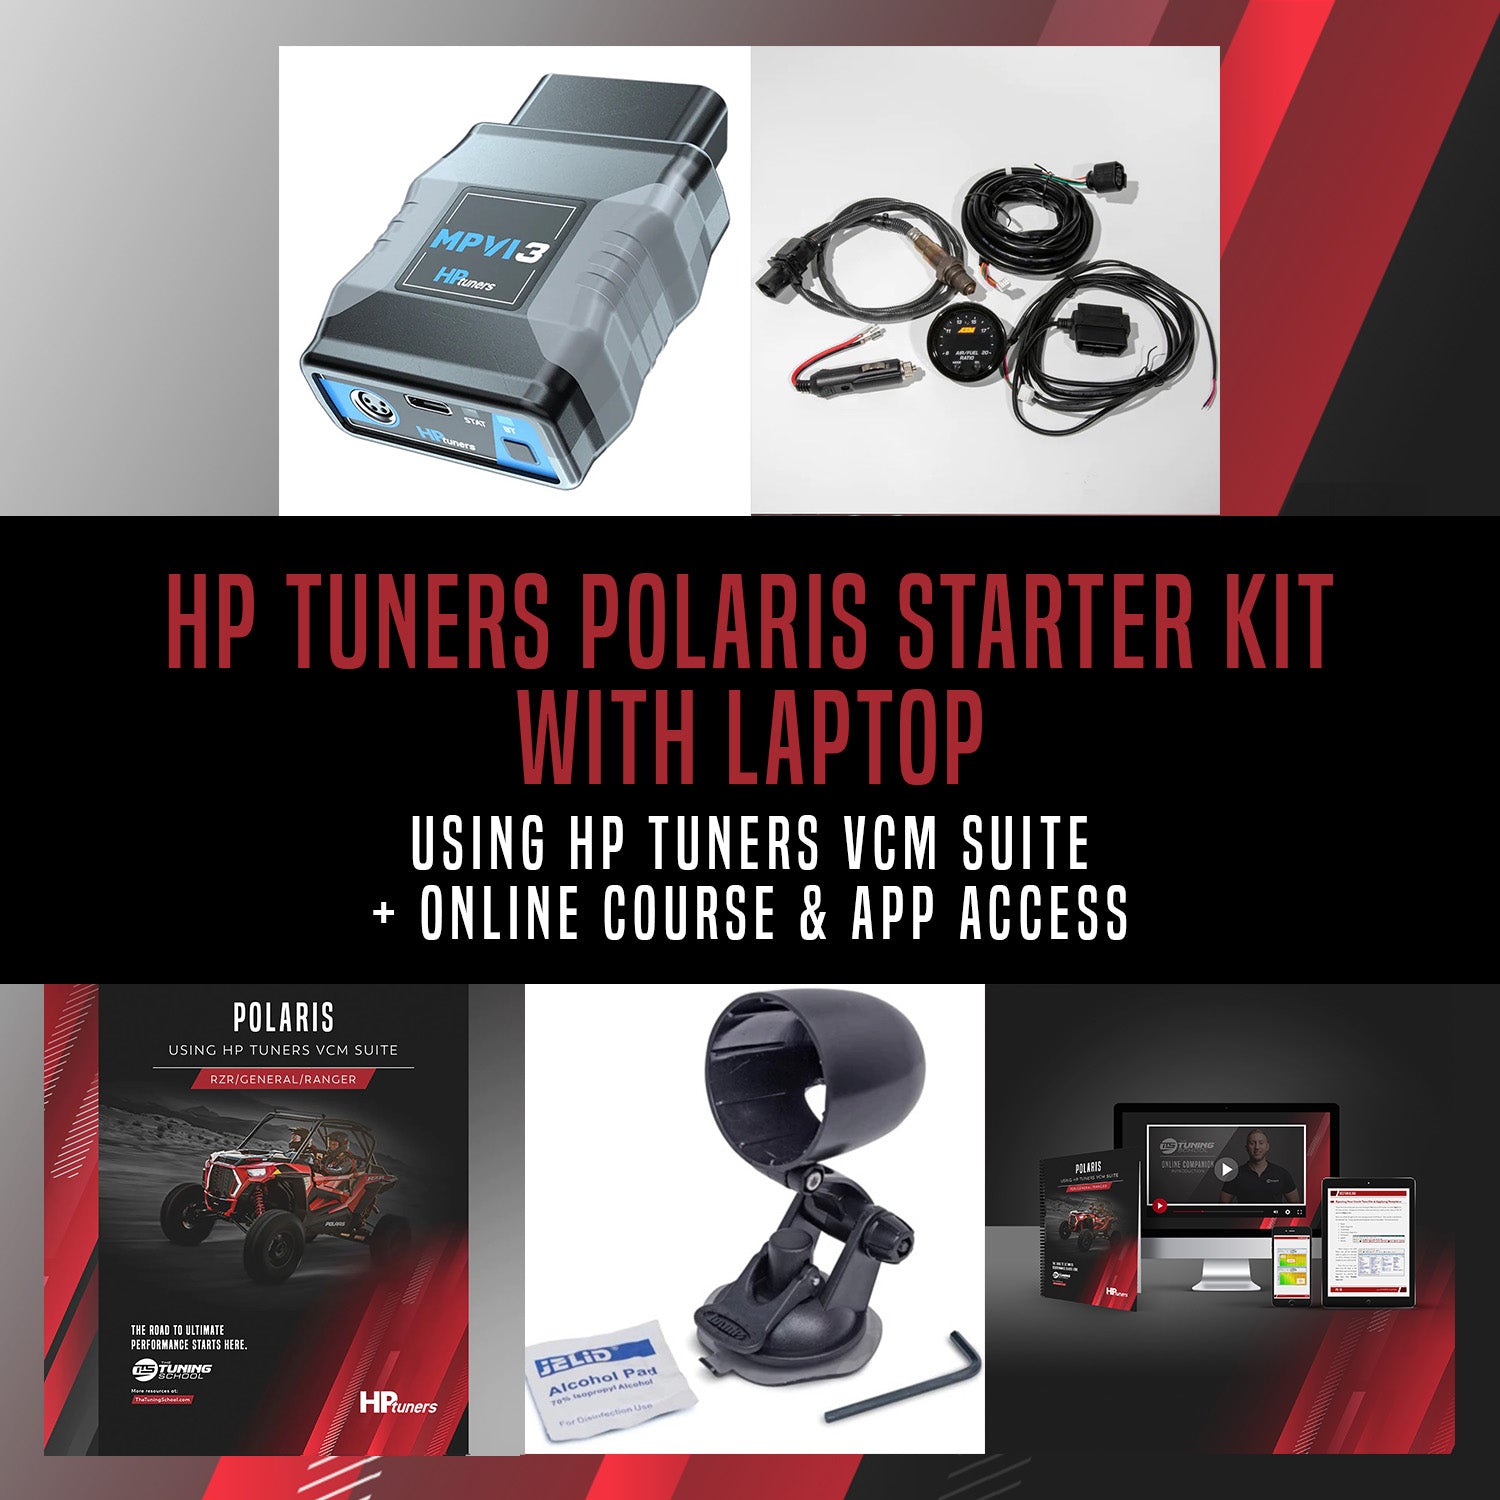 Polaris using HP Tuners Starter Kit